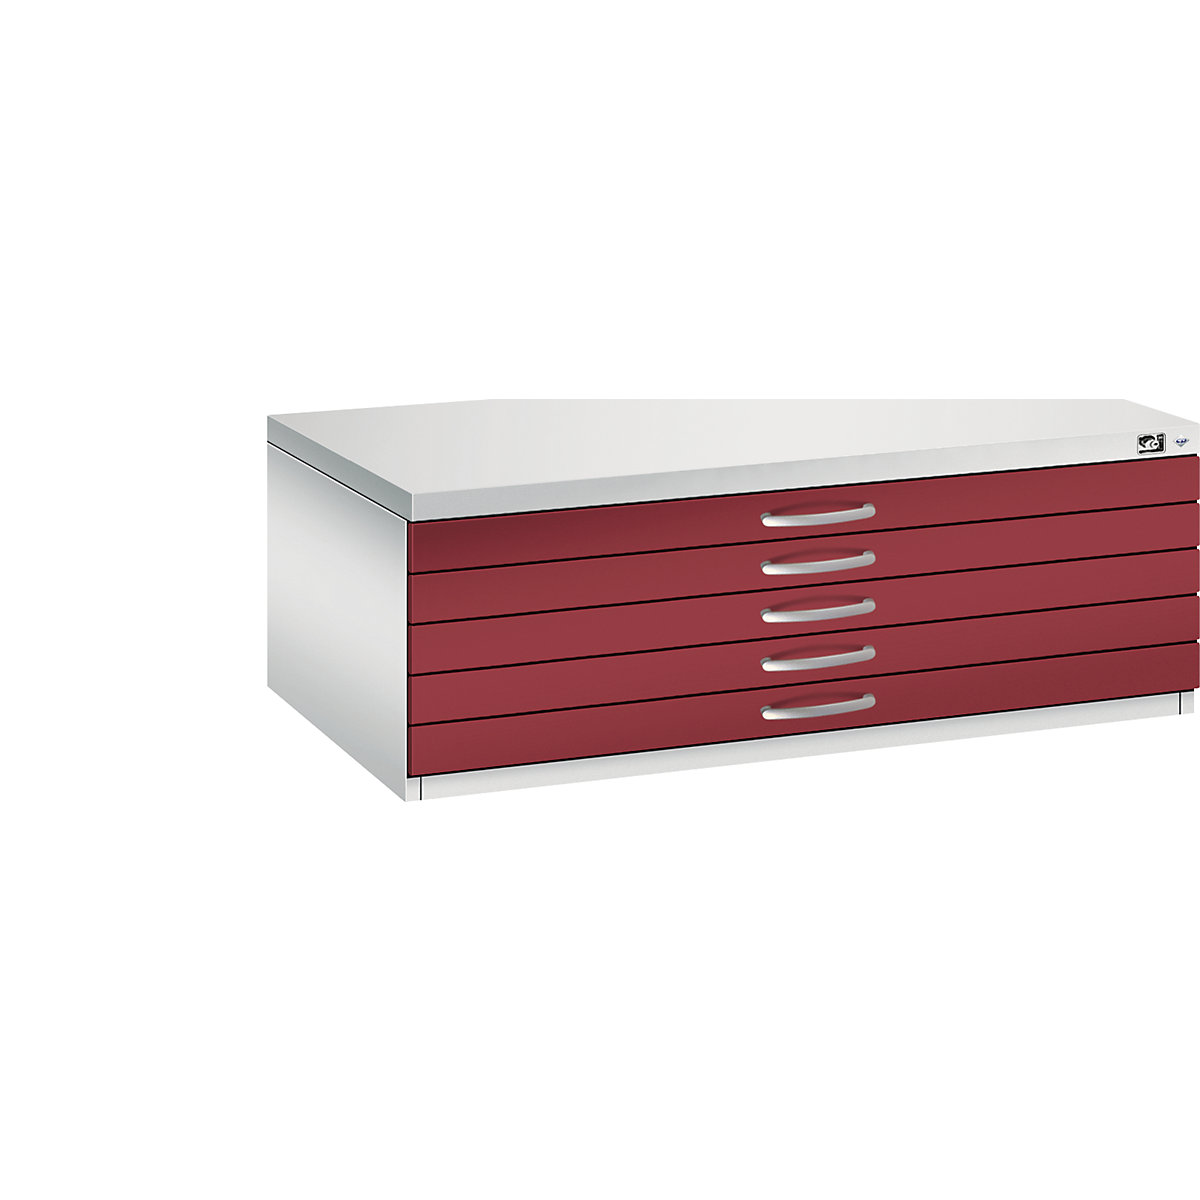 Skriňa na výkresy – C+P, DIN A1, 5 zásuviek, výška 420 mm, svetlošedá / rubínová červená-15